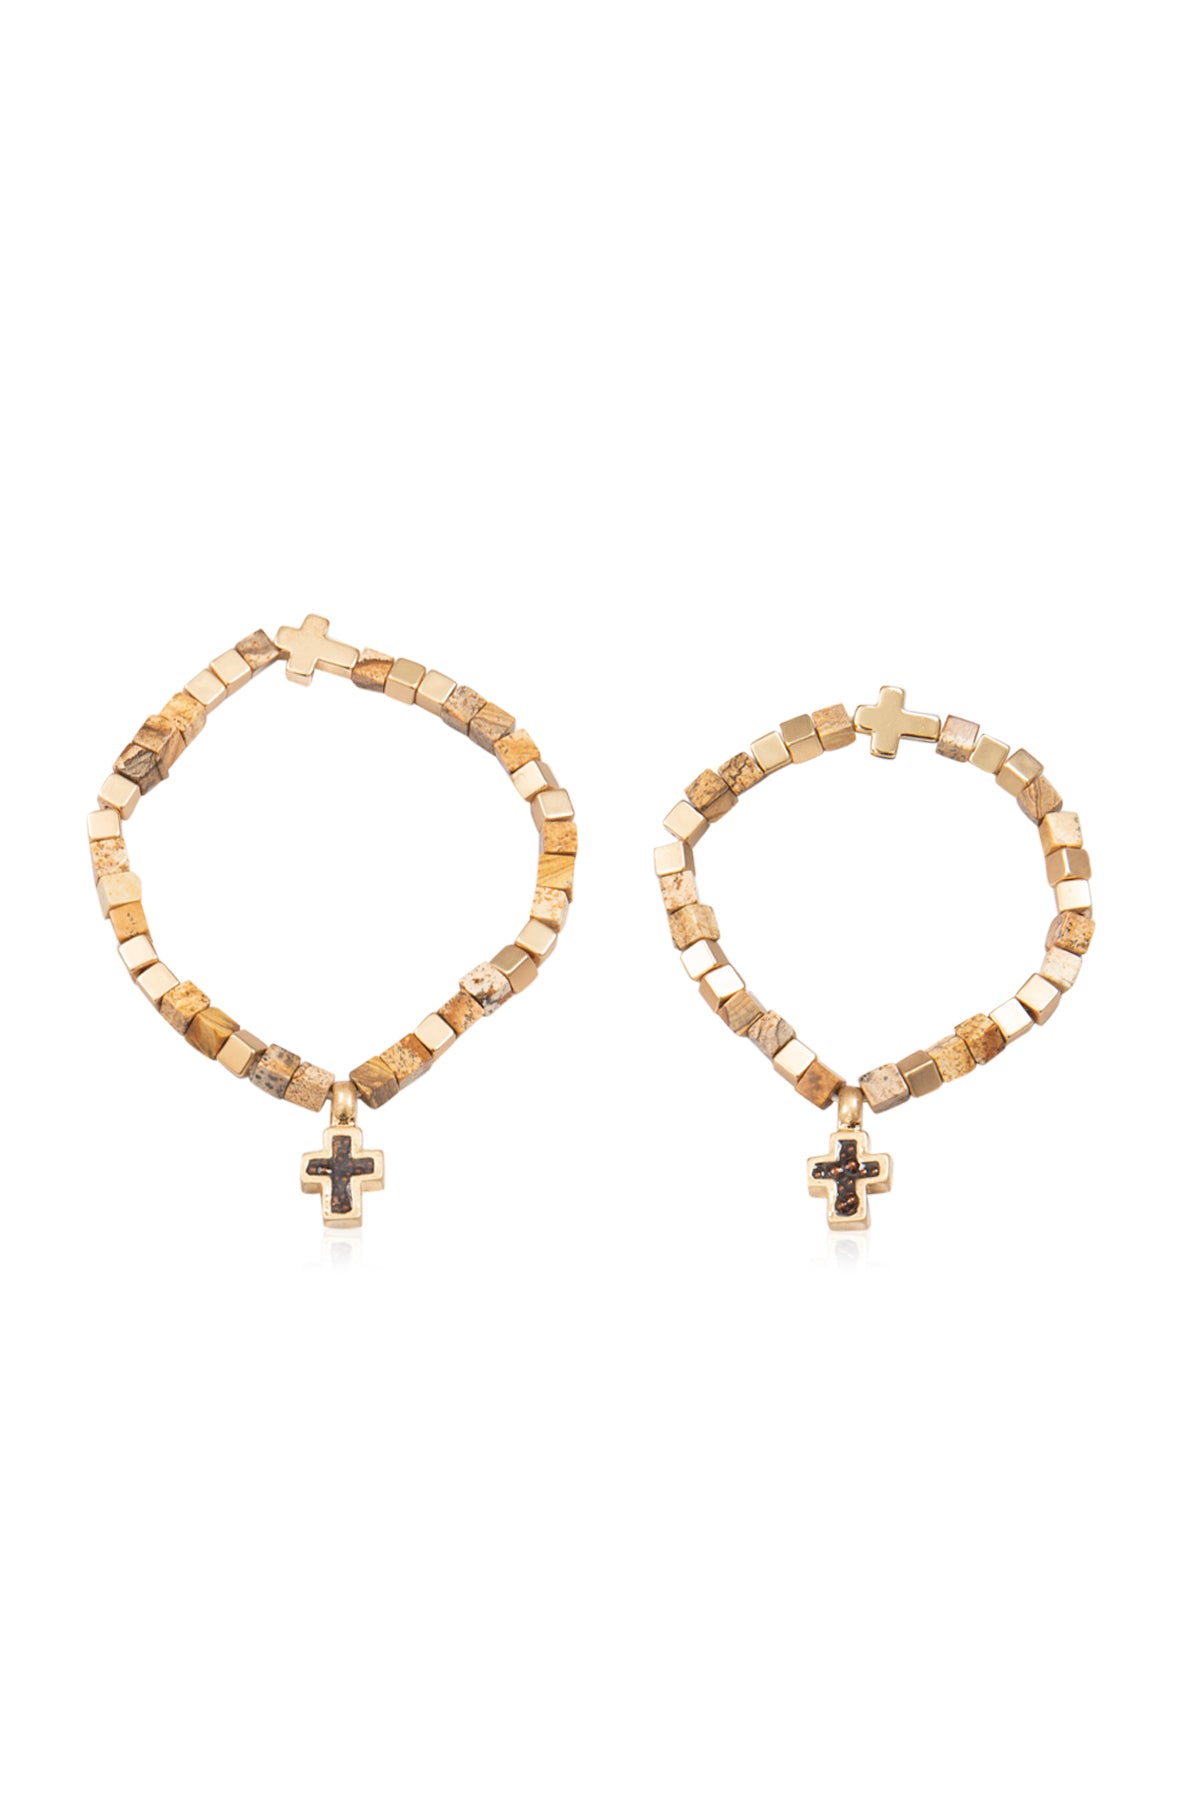 Sister Bracelets: Sentimental Matching Bracelets for Sisters